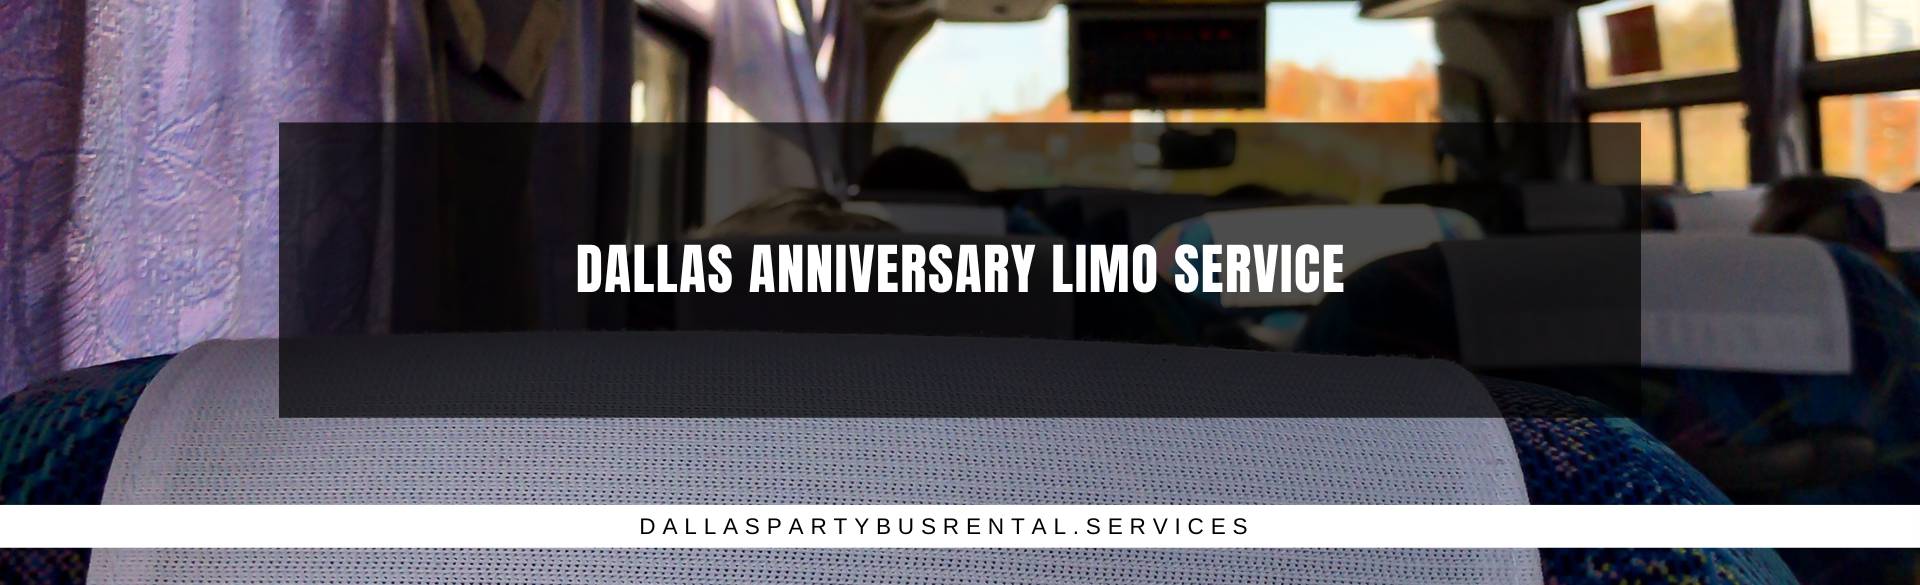 Dallas Anniversary Limo Service